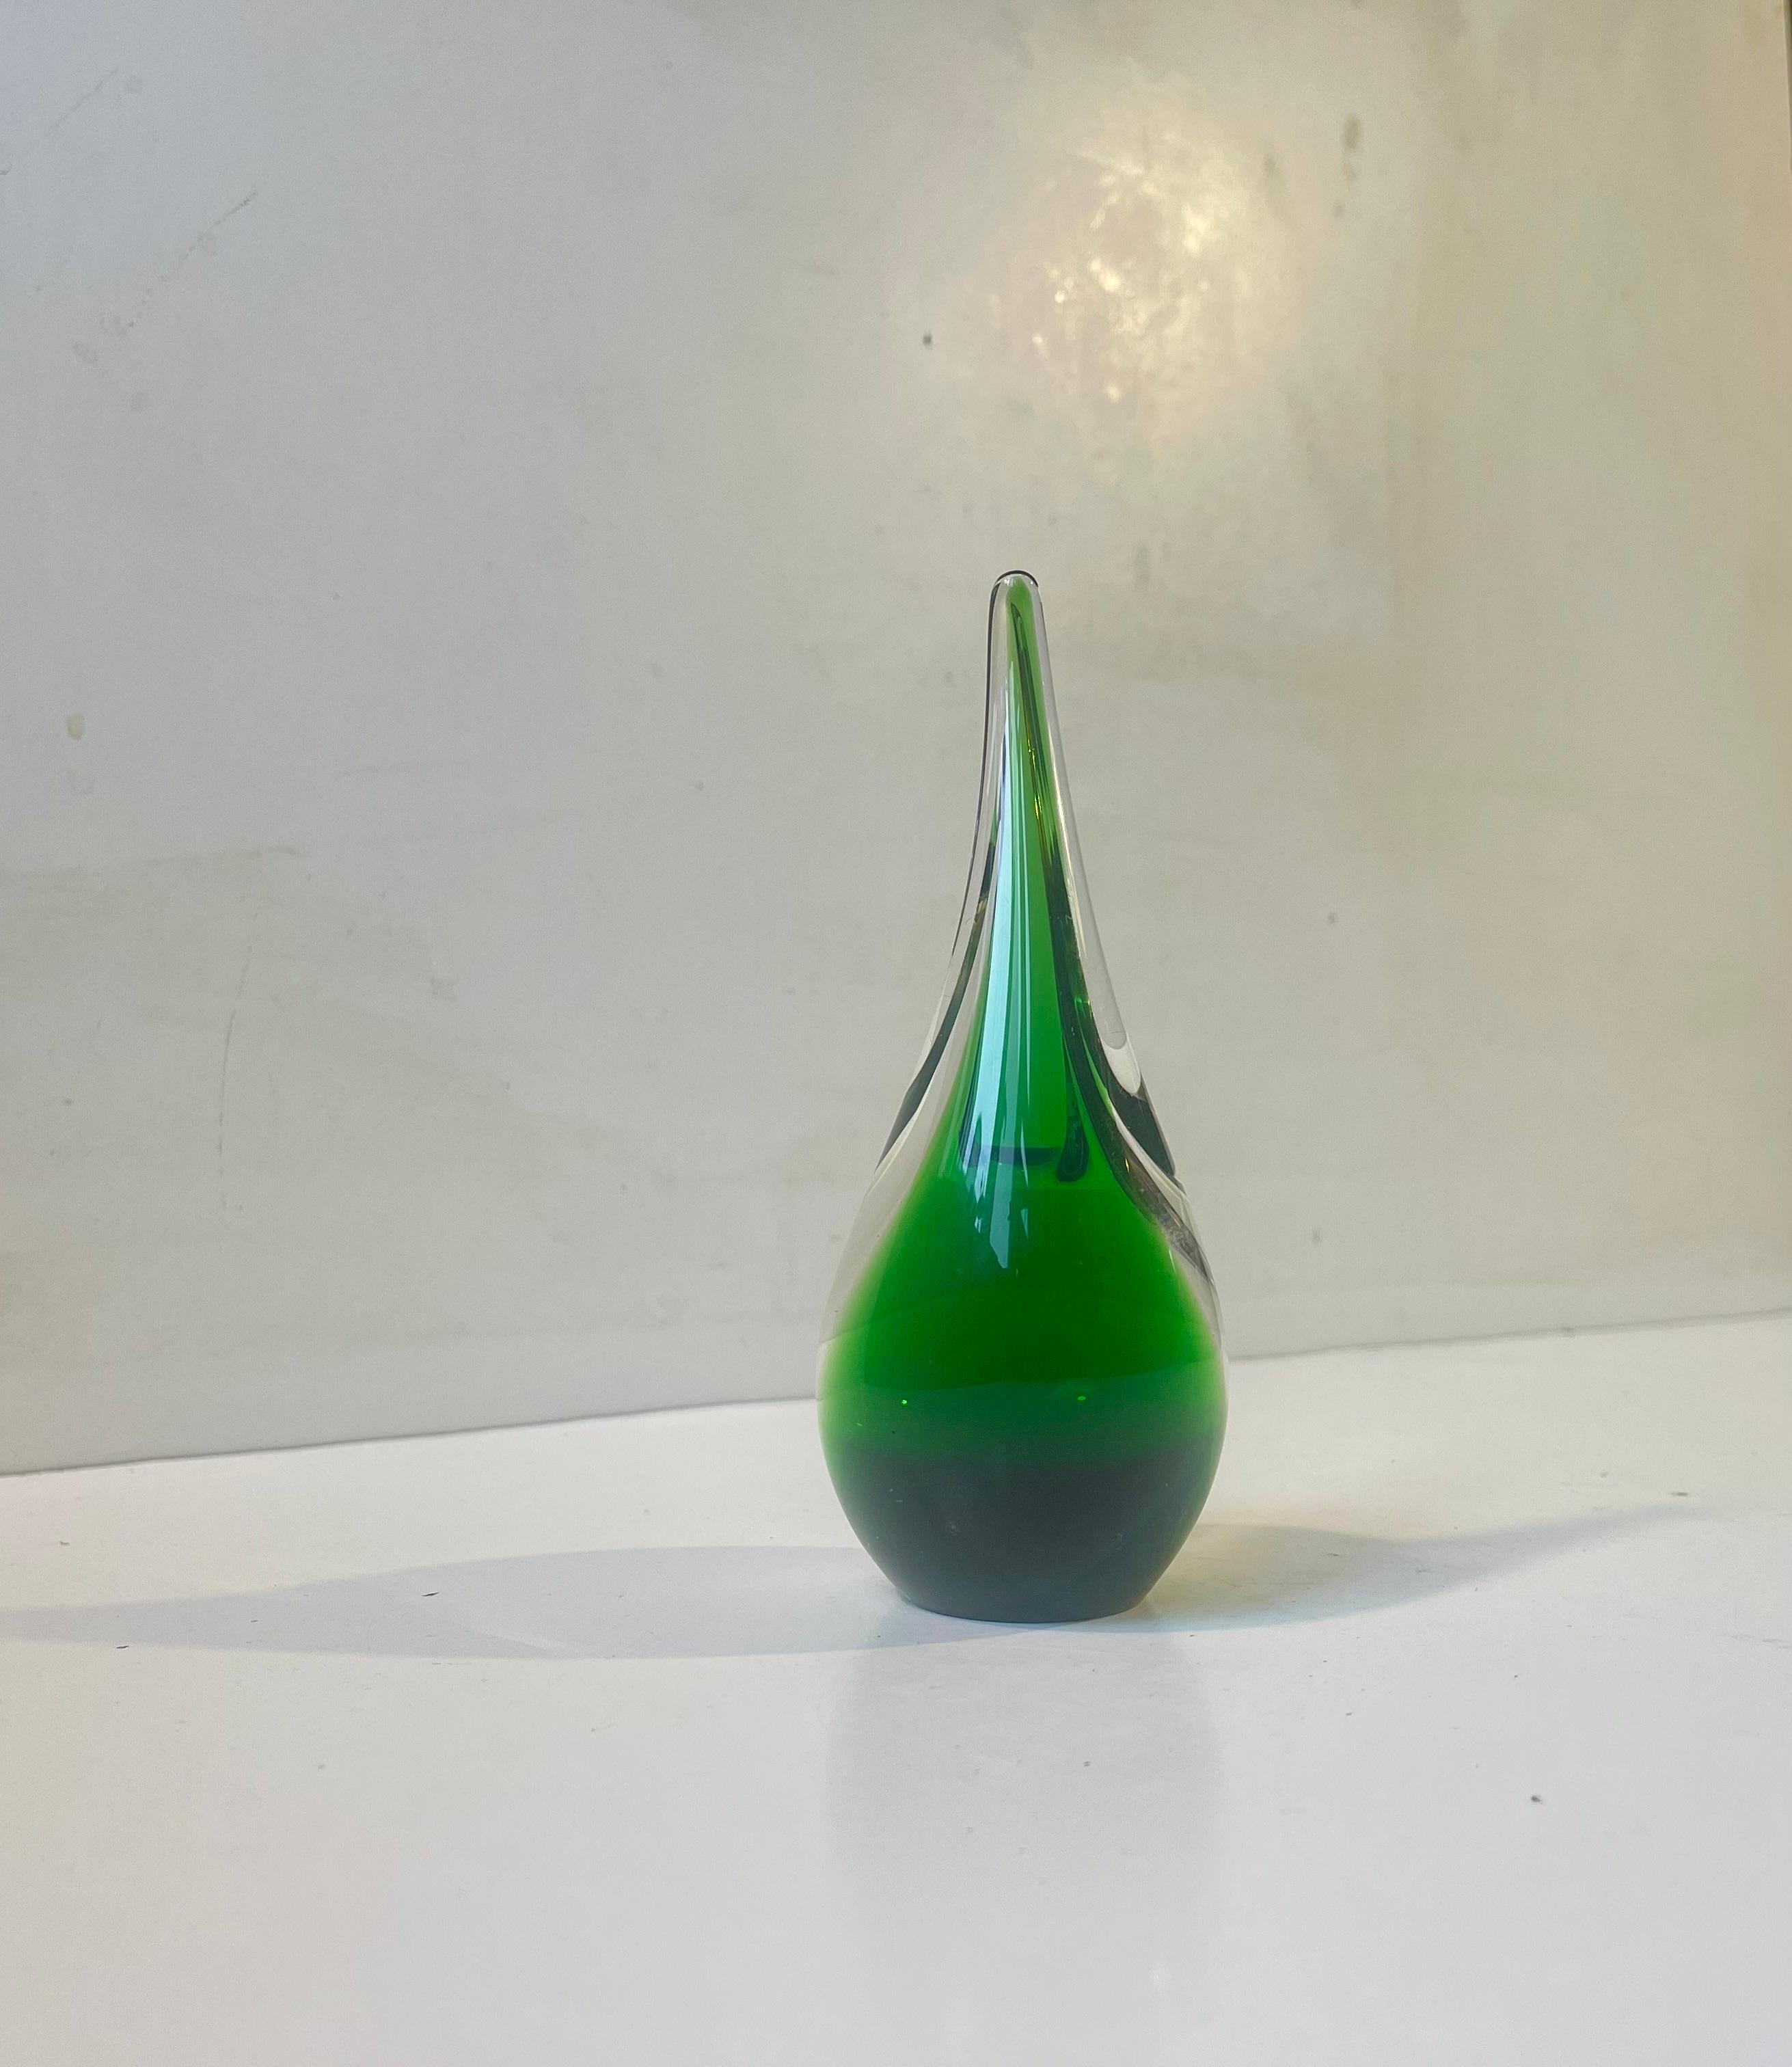 Einzigartige Vase aus Kunstglas, entworfen und hergestellt von Per Lütken bei Holmegaard in Dänemark im Jahr 1957. Ausgeführt in grünem und sauberem mundgeblasenem Sommerso-Glas. Handsigniert auf dem Sockel Holmegaard, 1957, PLS (Per Lütken).